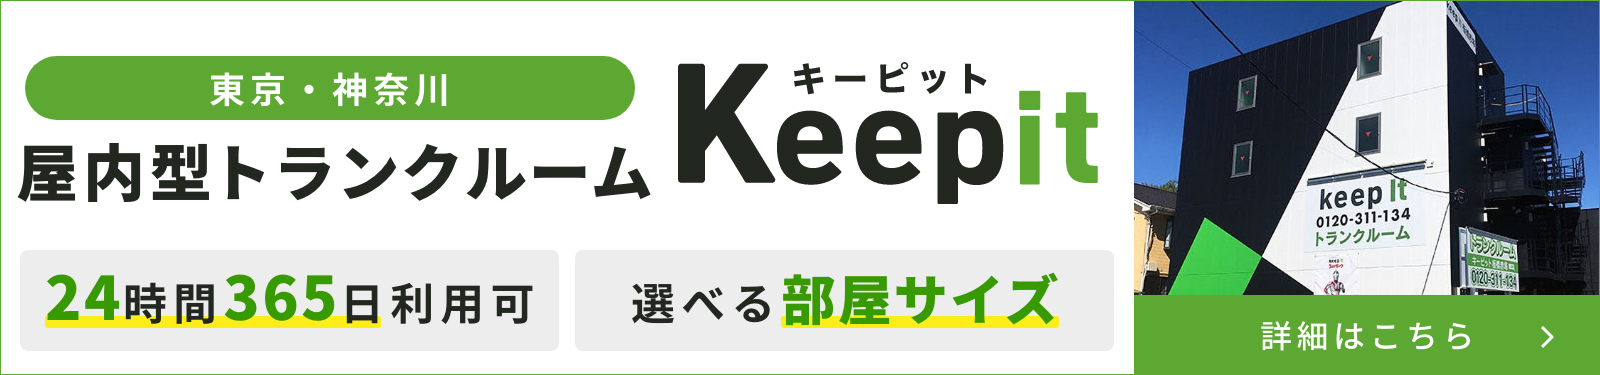 即日からご利用可能！東京・神奈川で屋内トランクルームをお探しならキーピット/KeepIt